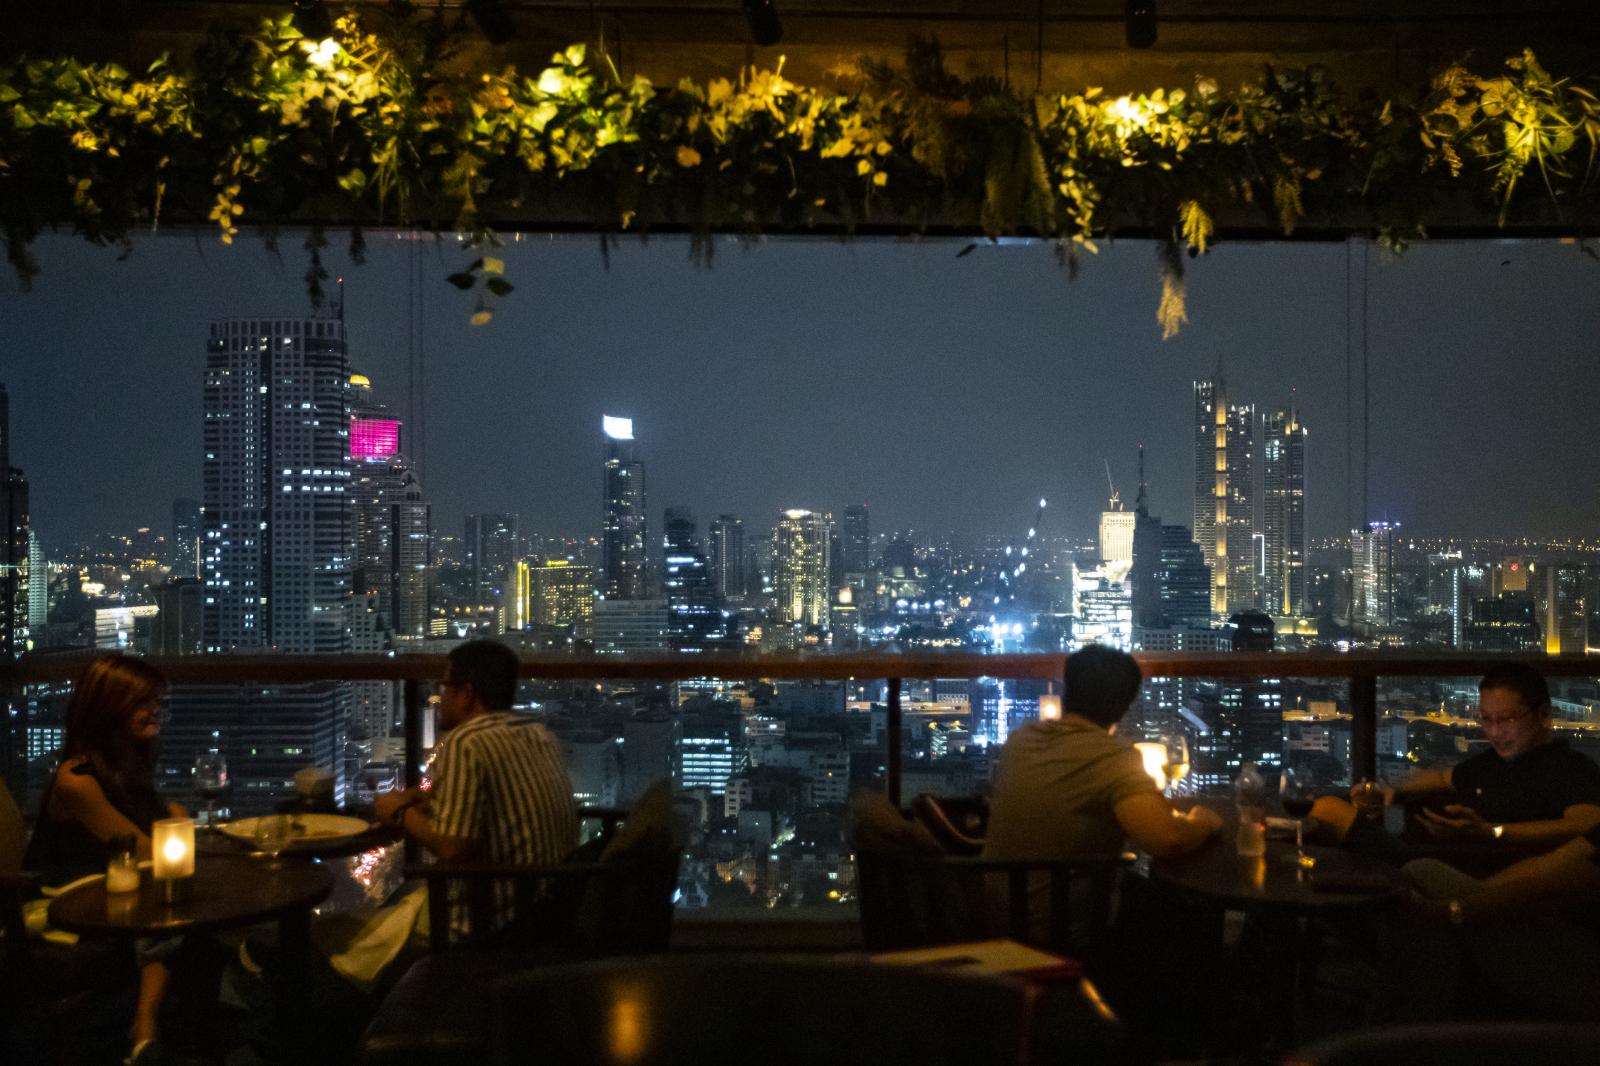 Bangkok rooftop view | Buy this image